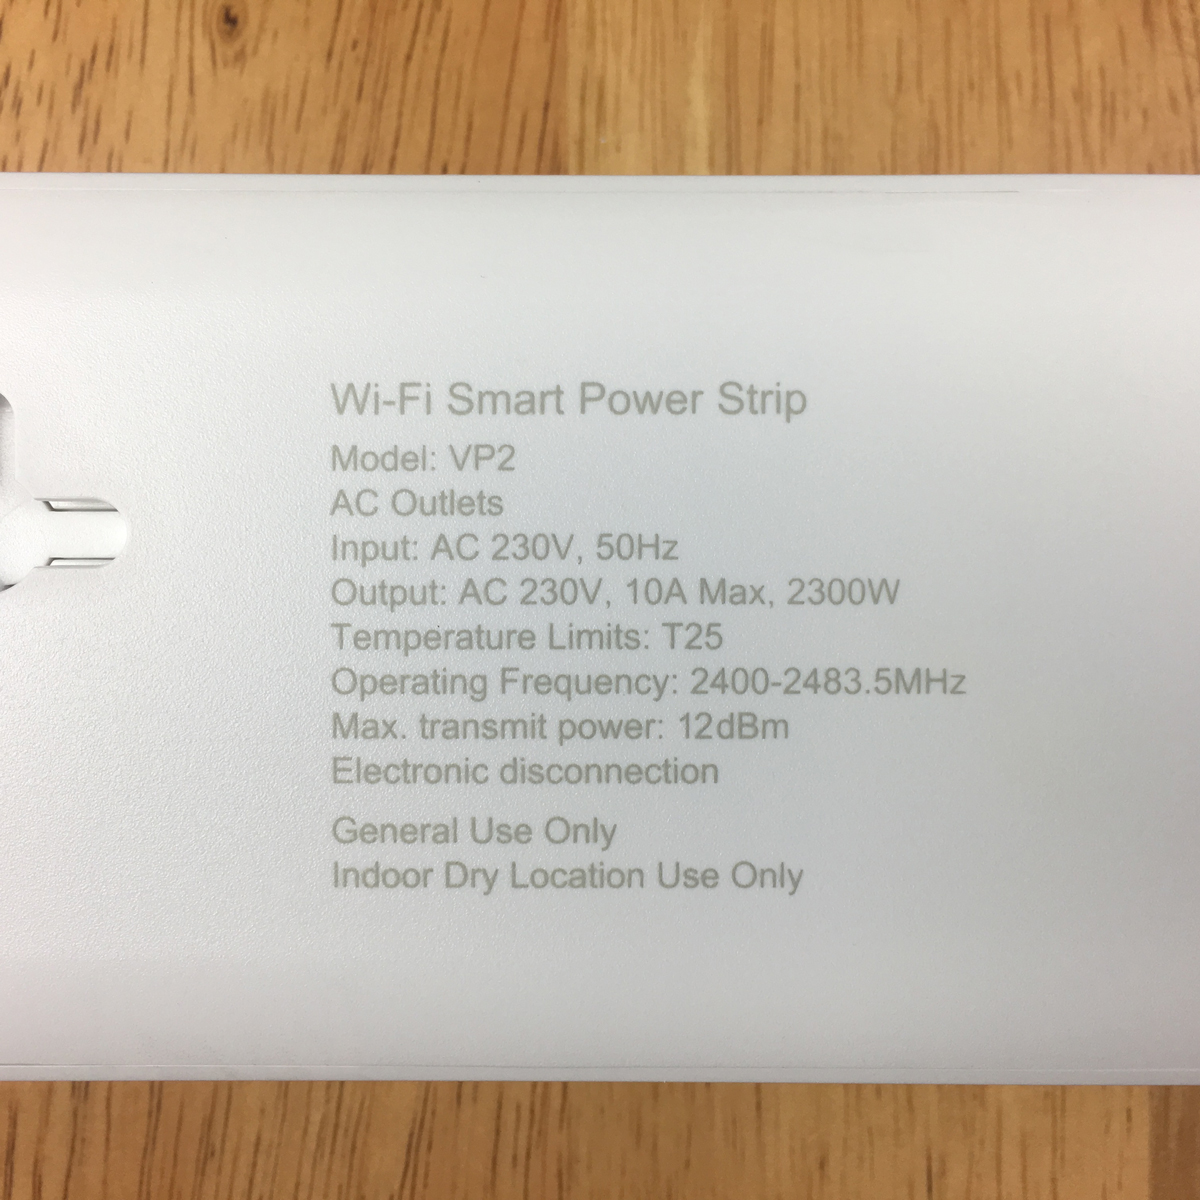 1568881147 358 The Vocolinc EU Smart Plug and Power Strip – First